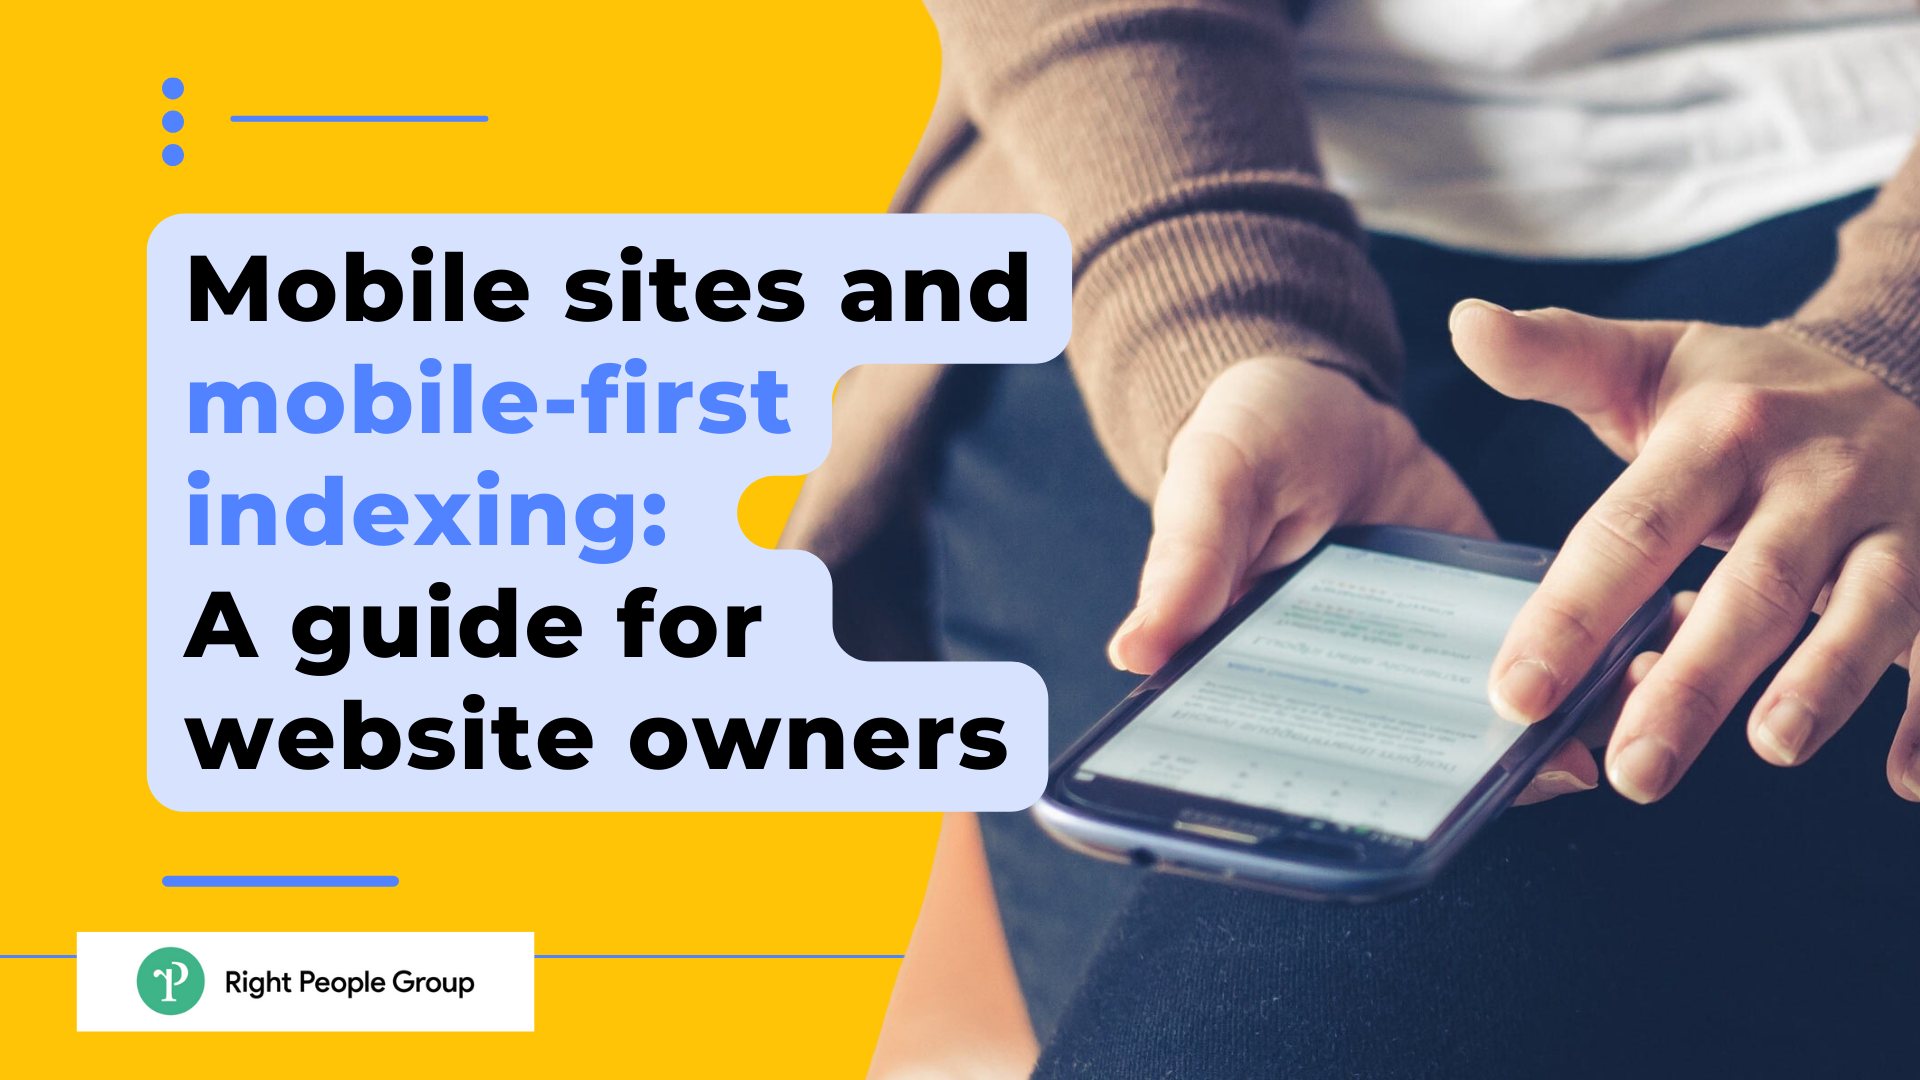 Sitios móviles e indexación mobile-first: Guía para propietarios de sitios web